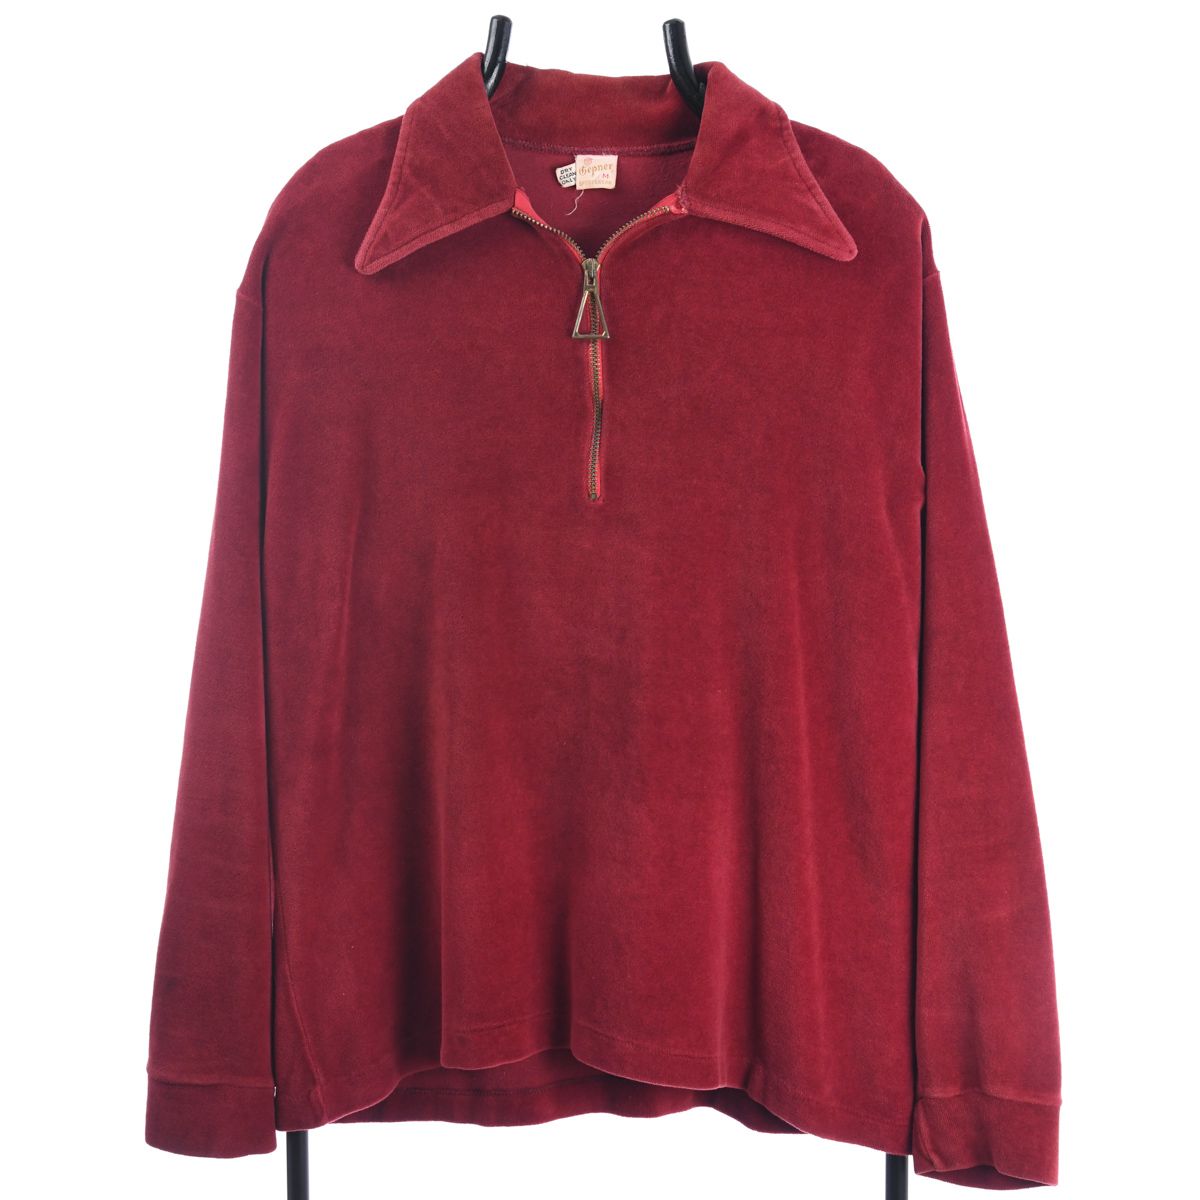 Gepner 1960s Velour Collared Sweatshirt